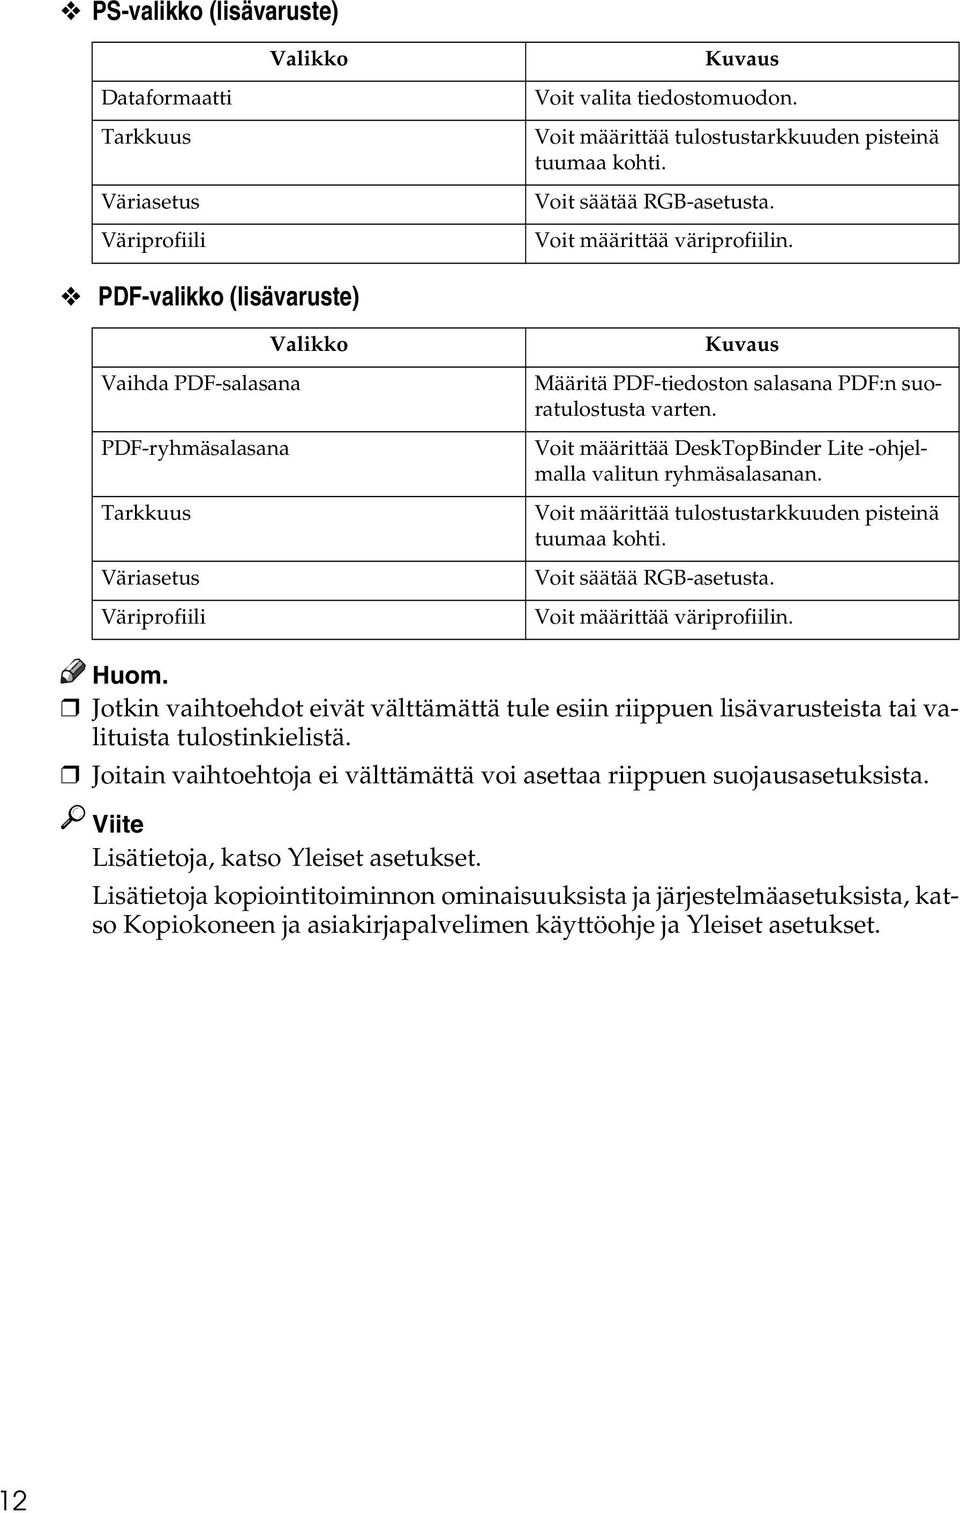 PDF-valikko (lisävaruste) Valikko Vaihda PDF-salasana PDF-ryhmäsalasana Tarkkuus Väriasetus Väriprofiili Kuvaus Määritä PDF-tiedoston salasana PDF:n suoratulostusta varten.